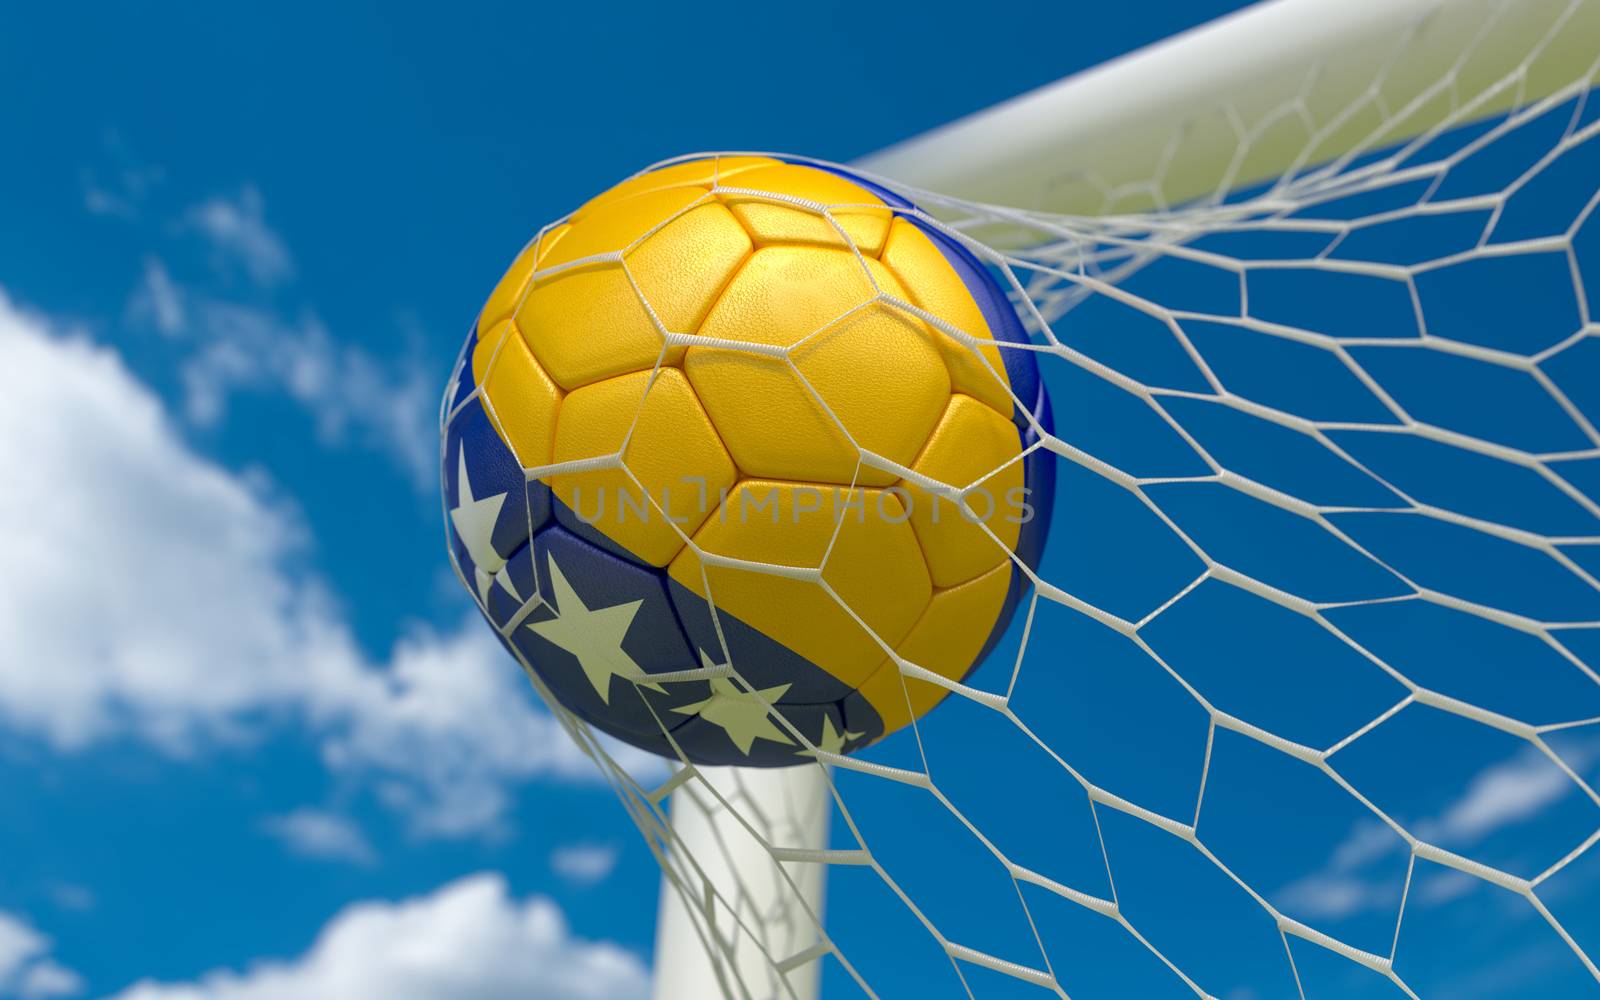  Bosnia flag and soccer ball in goal net by Barbraford